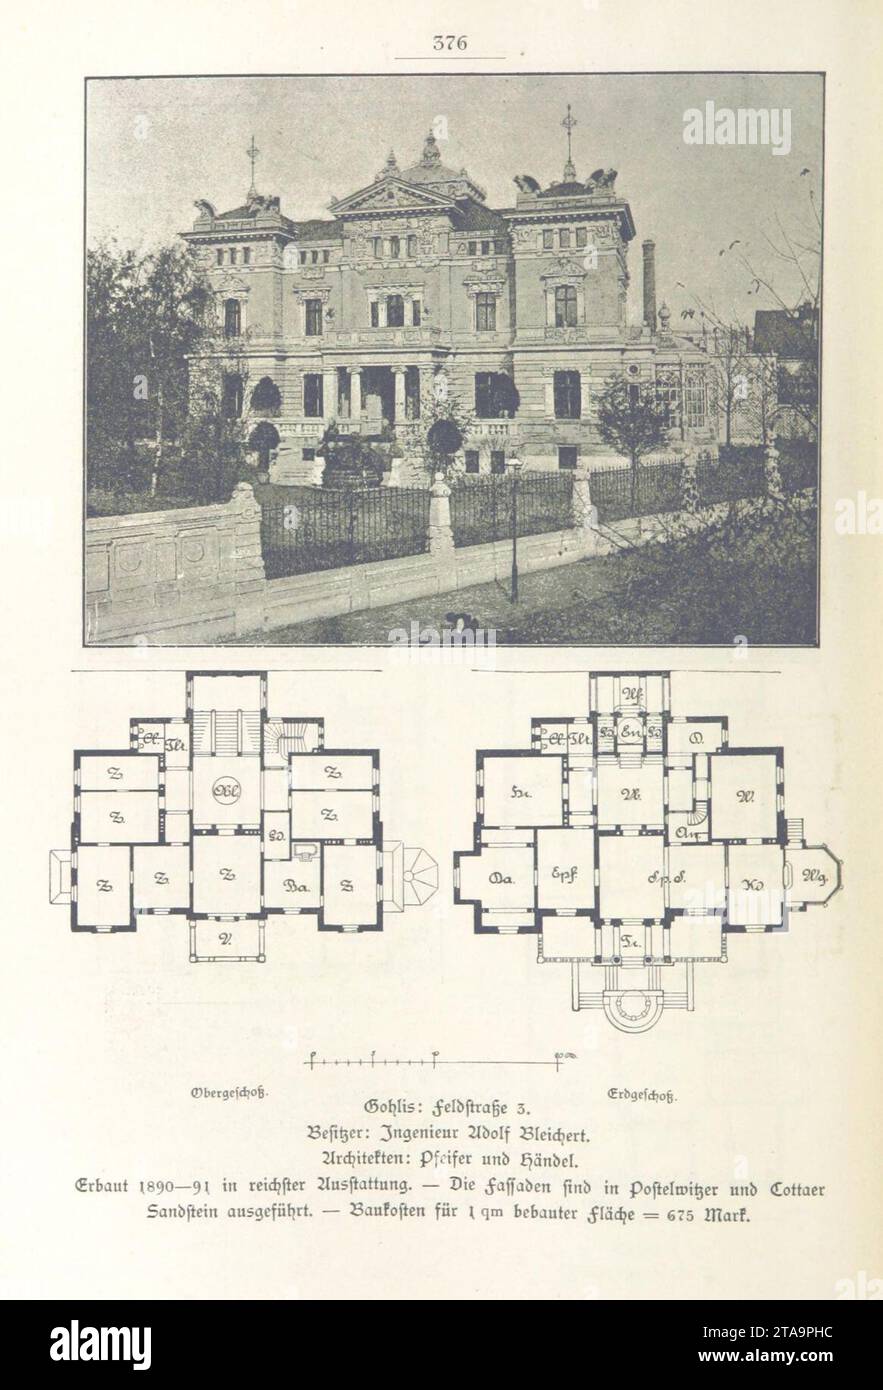 Villa Hilda (Leipzig, Lützowstraße 19) Adolf Bleichert (Pfeifer & Händel) - leipzig und seine bauten (1892), S. 376. Stock Photo